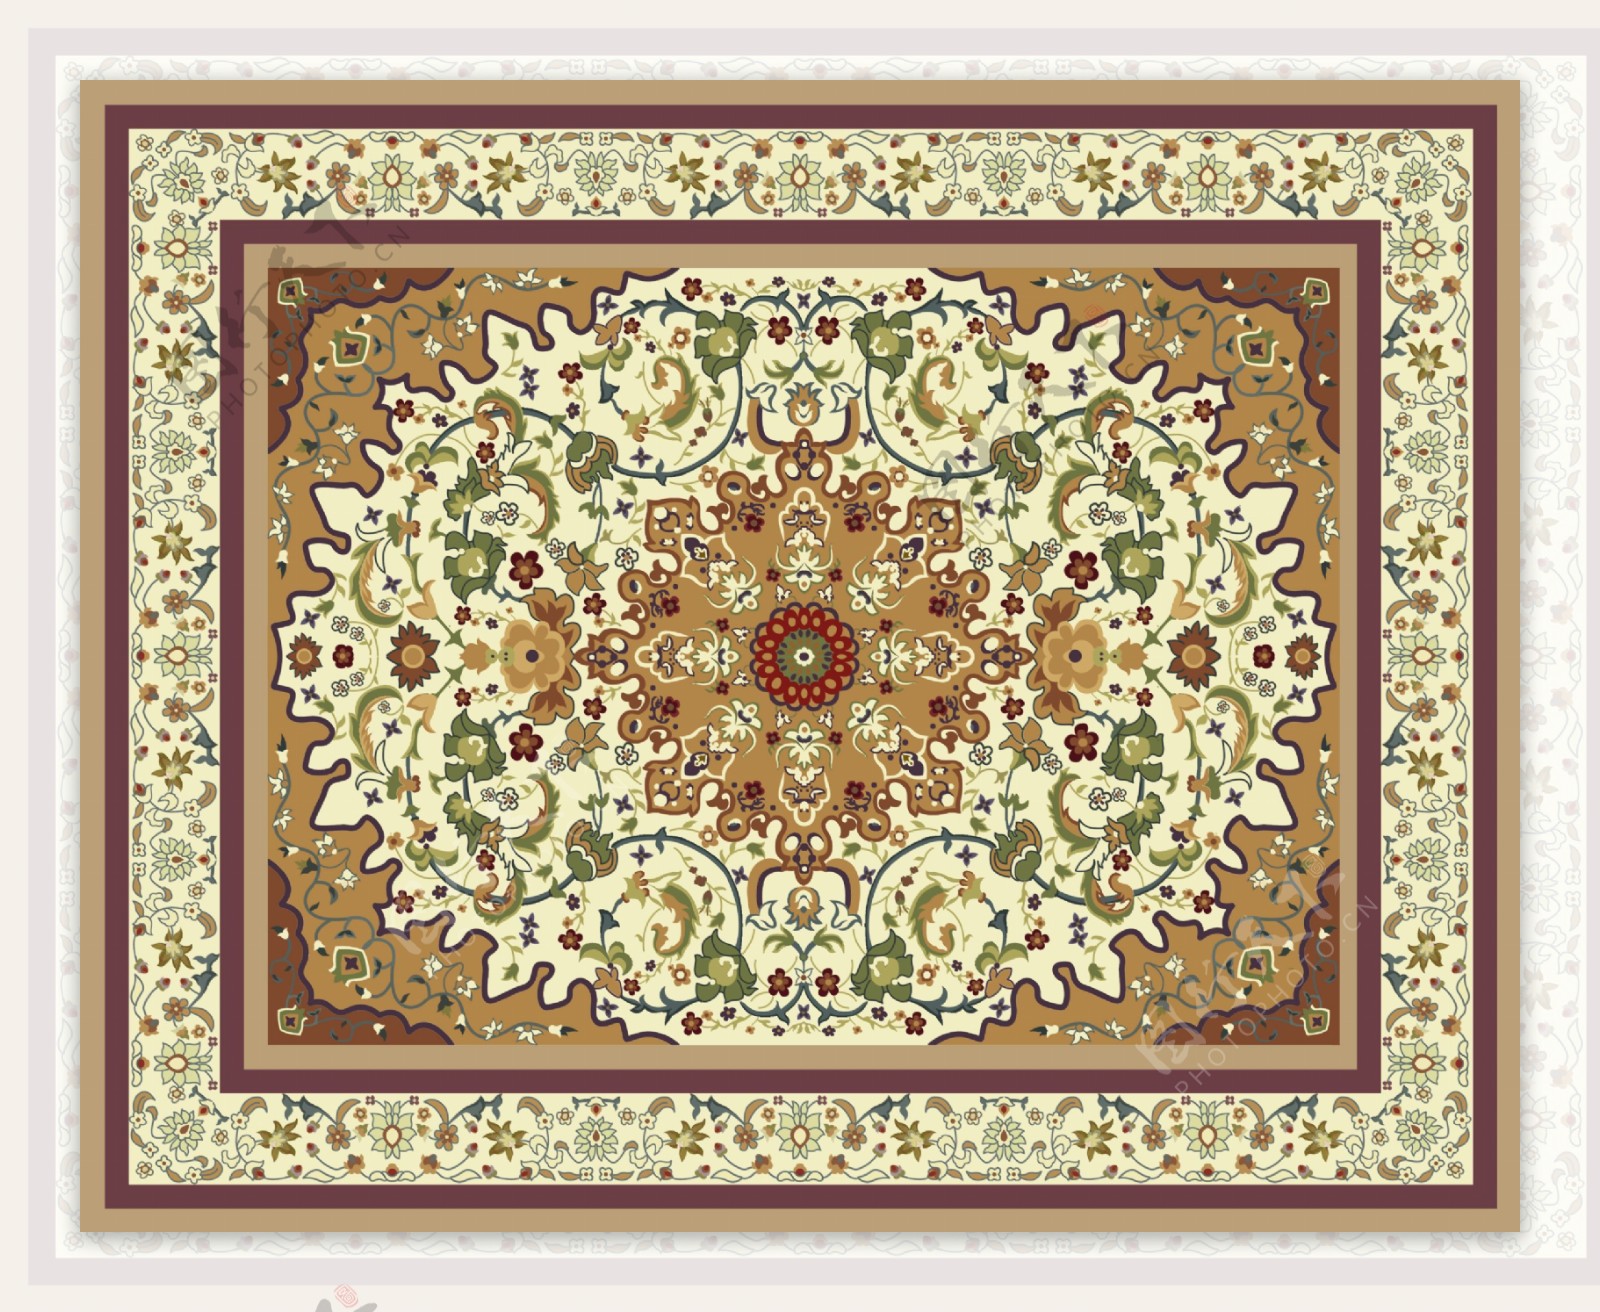 欧式波斯风格地毯图案图片